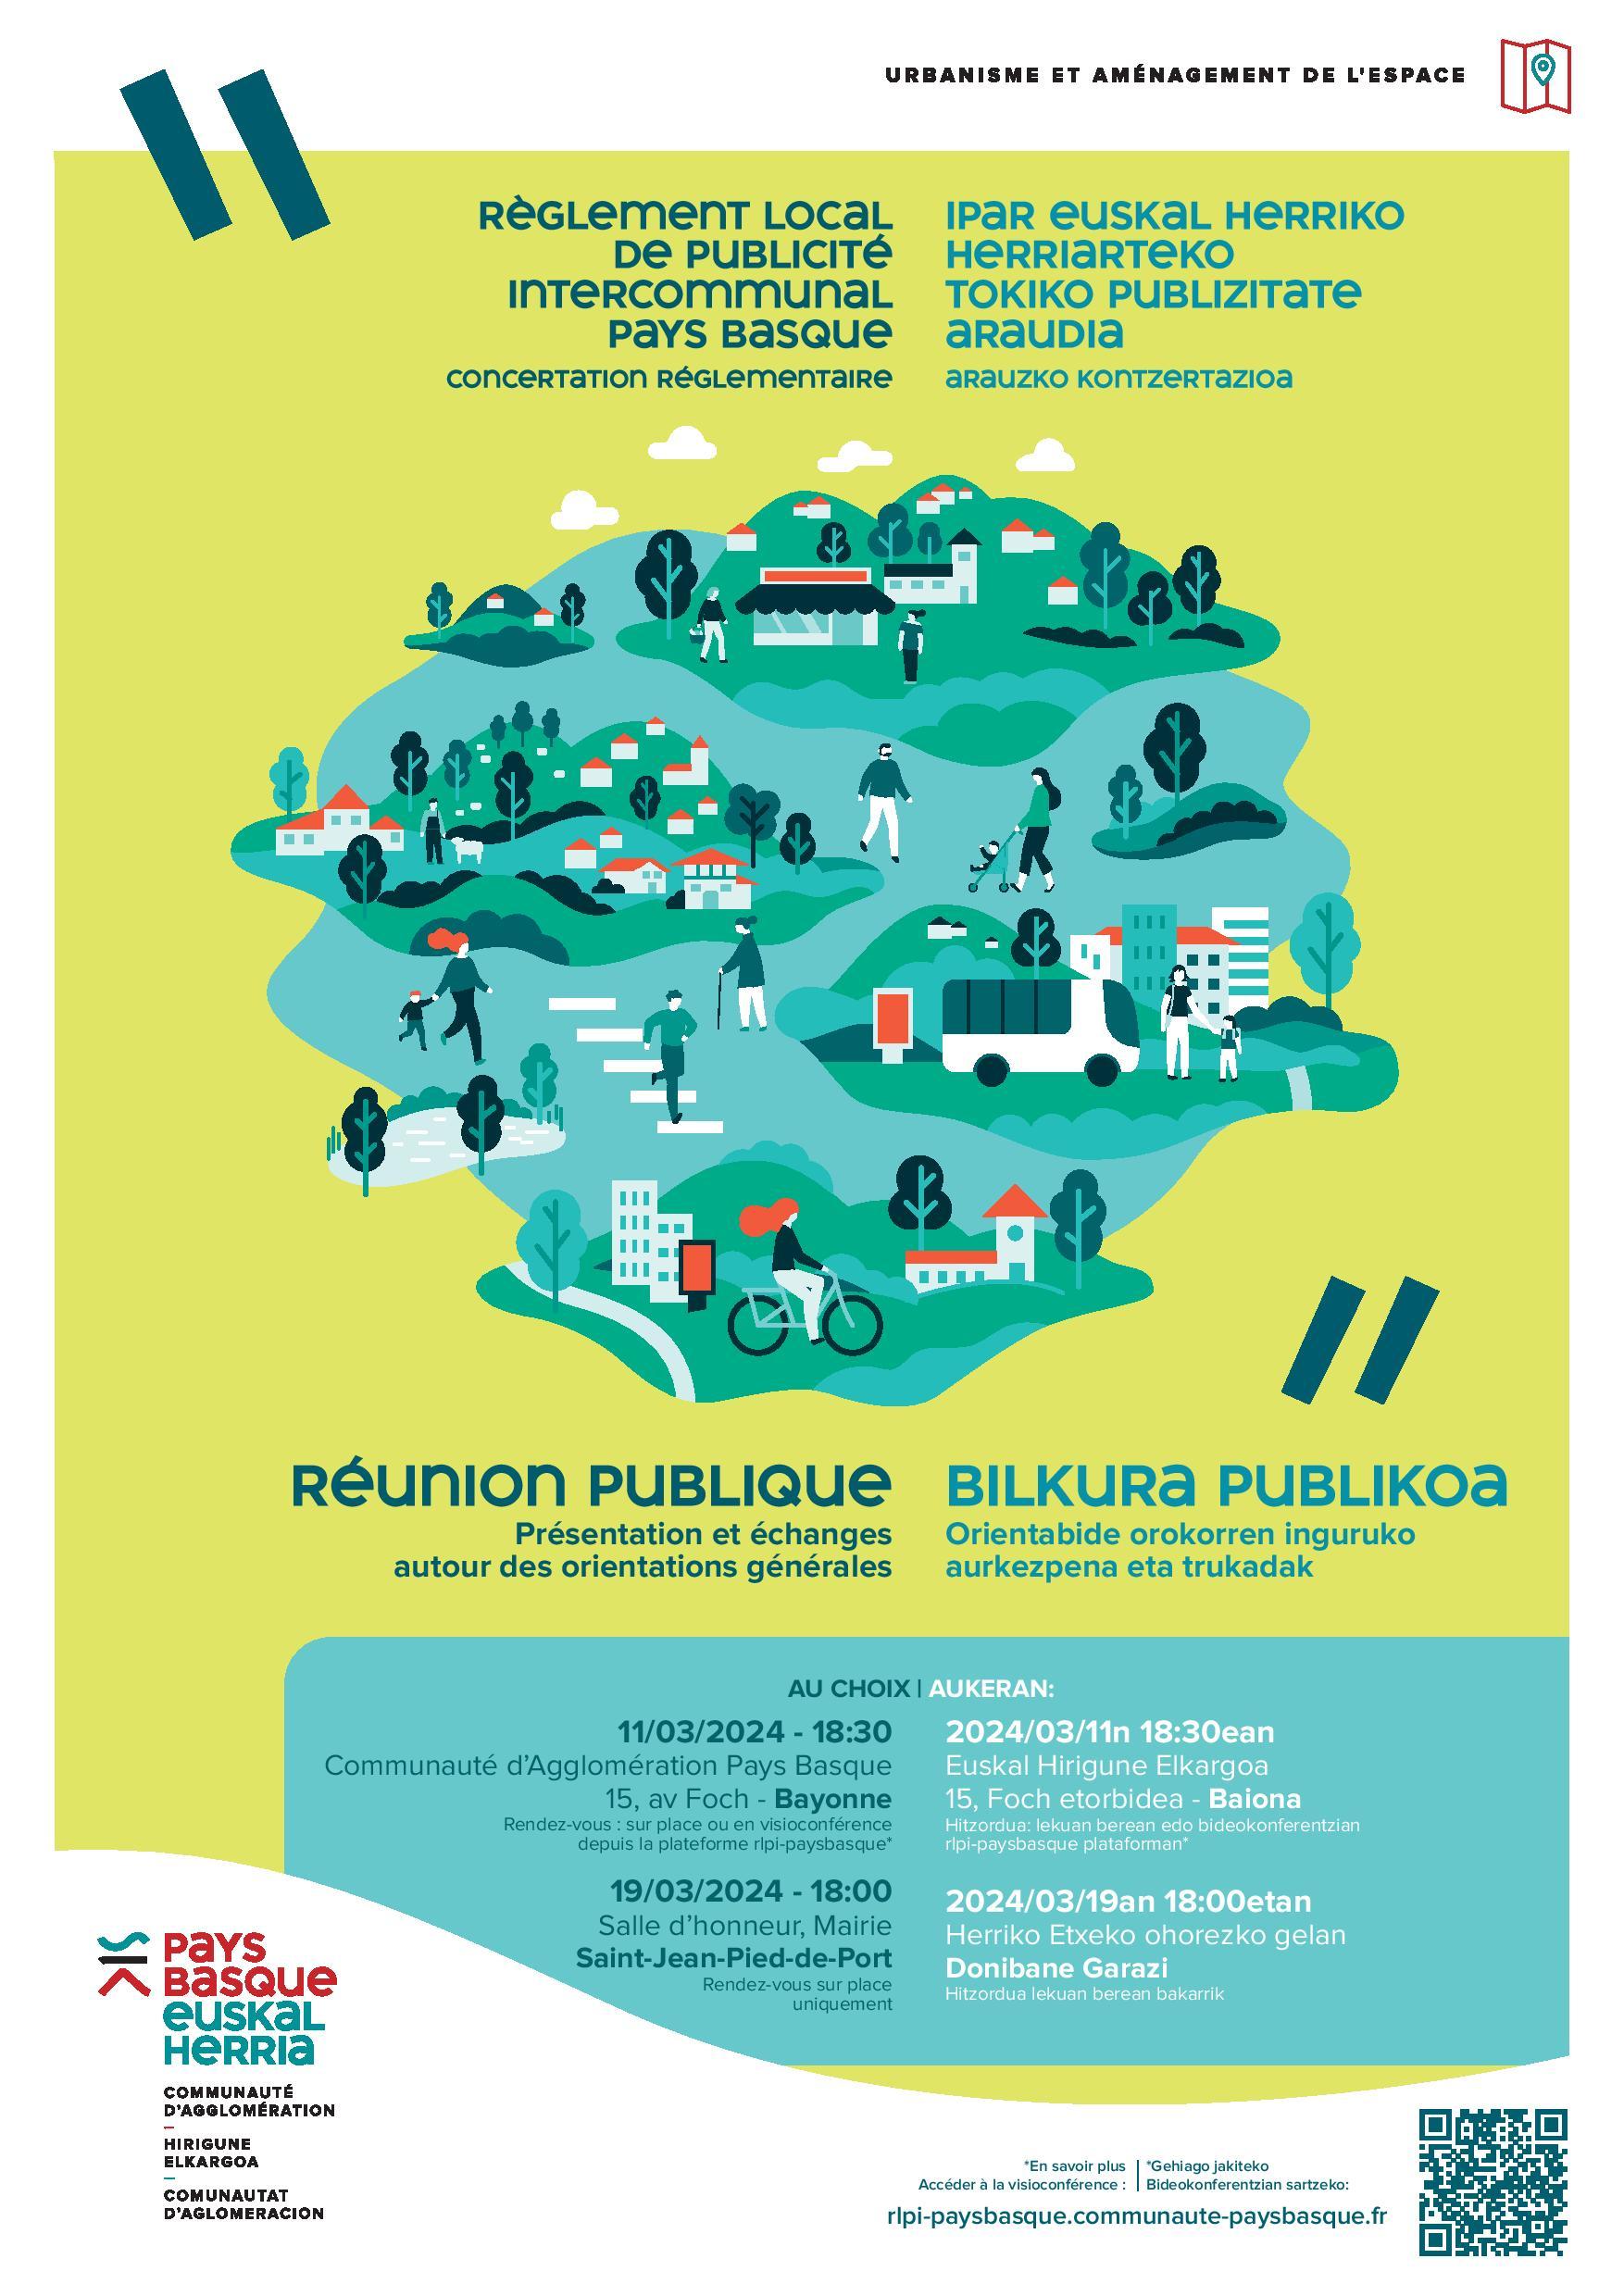 RLPI - Règlement local de publicité intercommunal Pays Basque